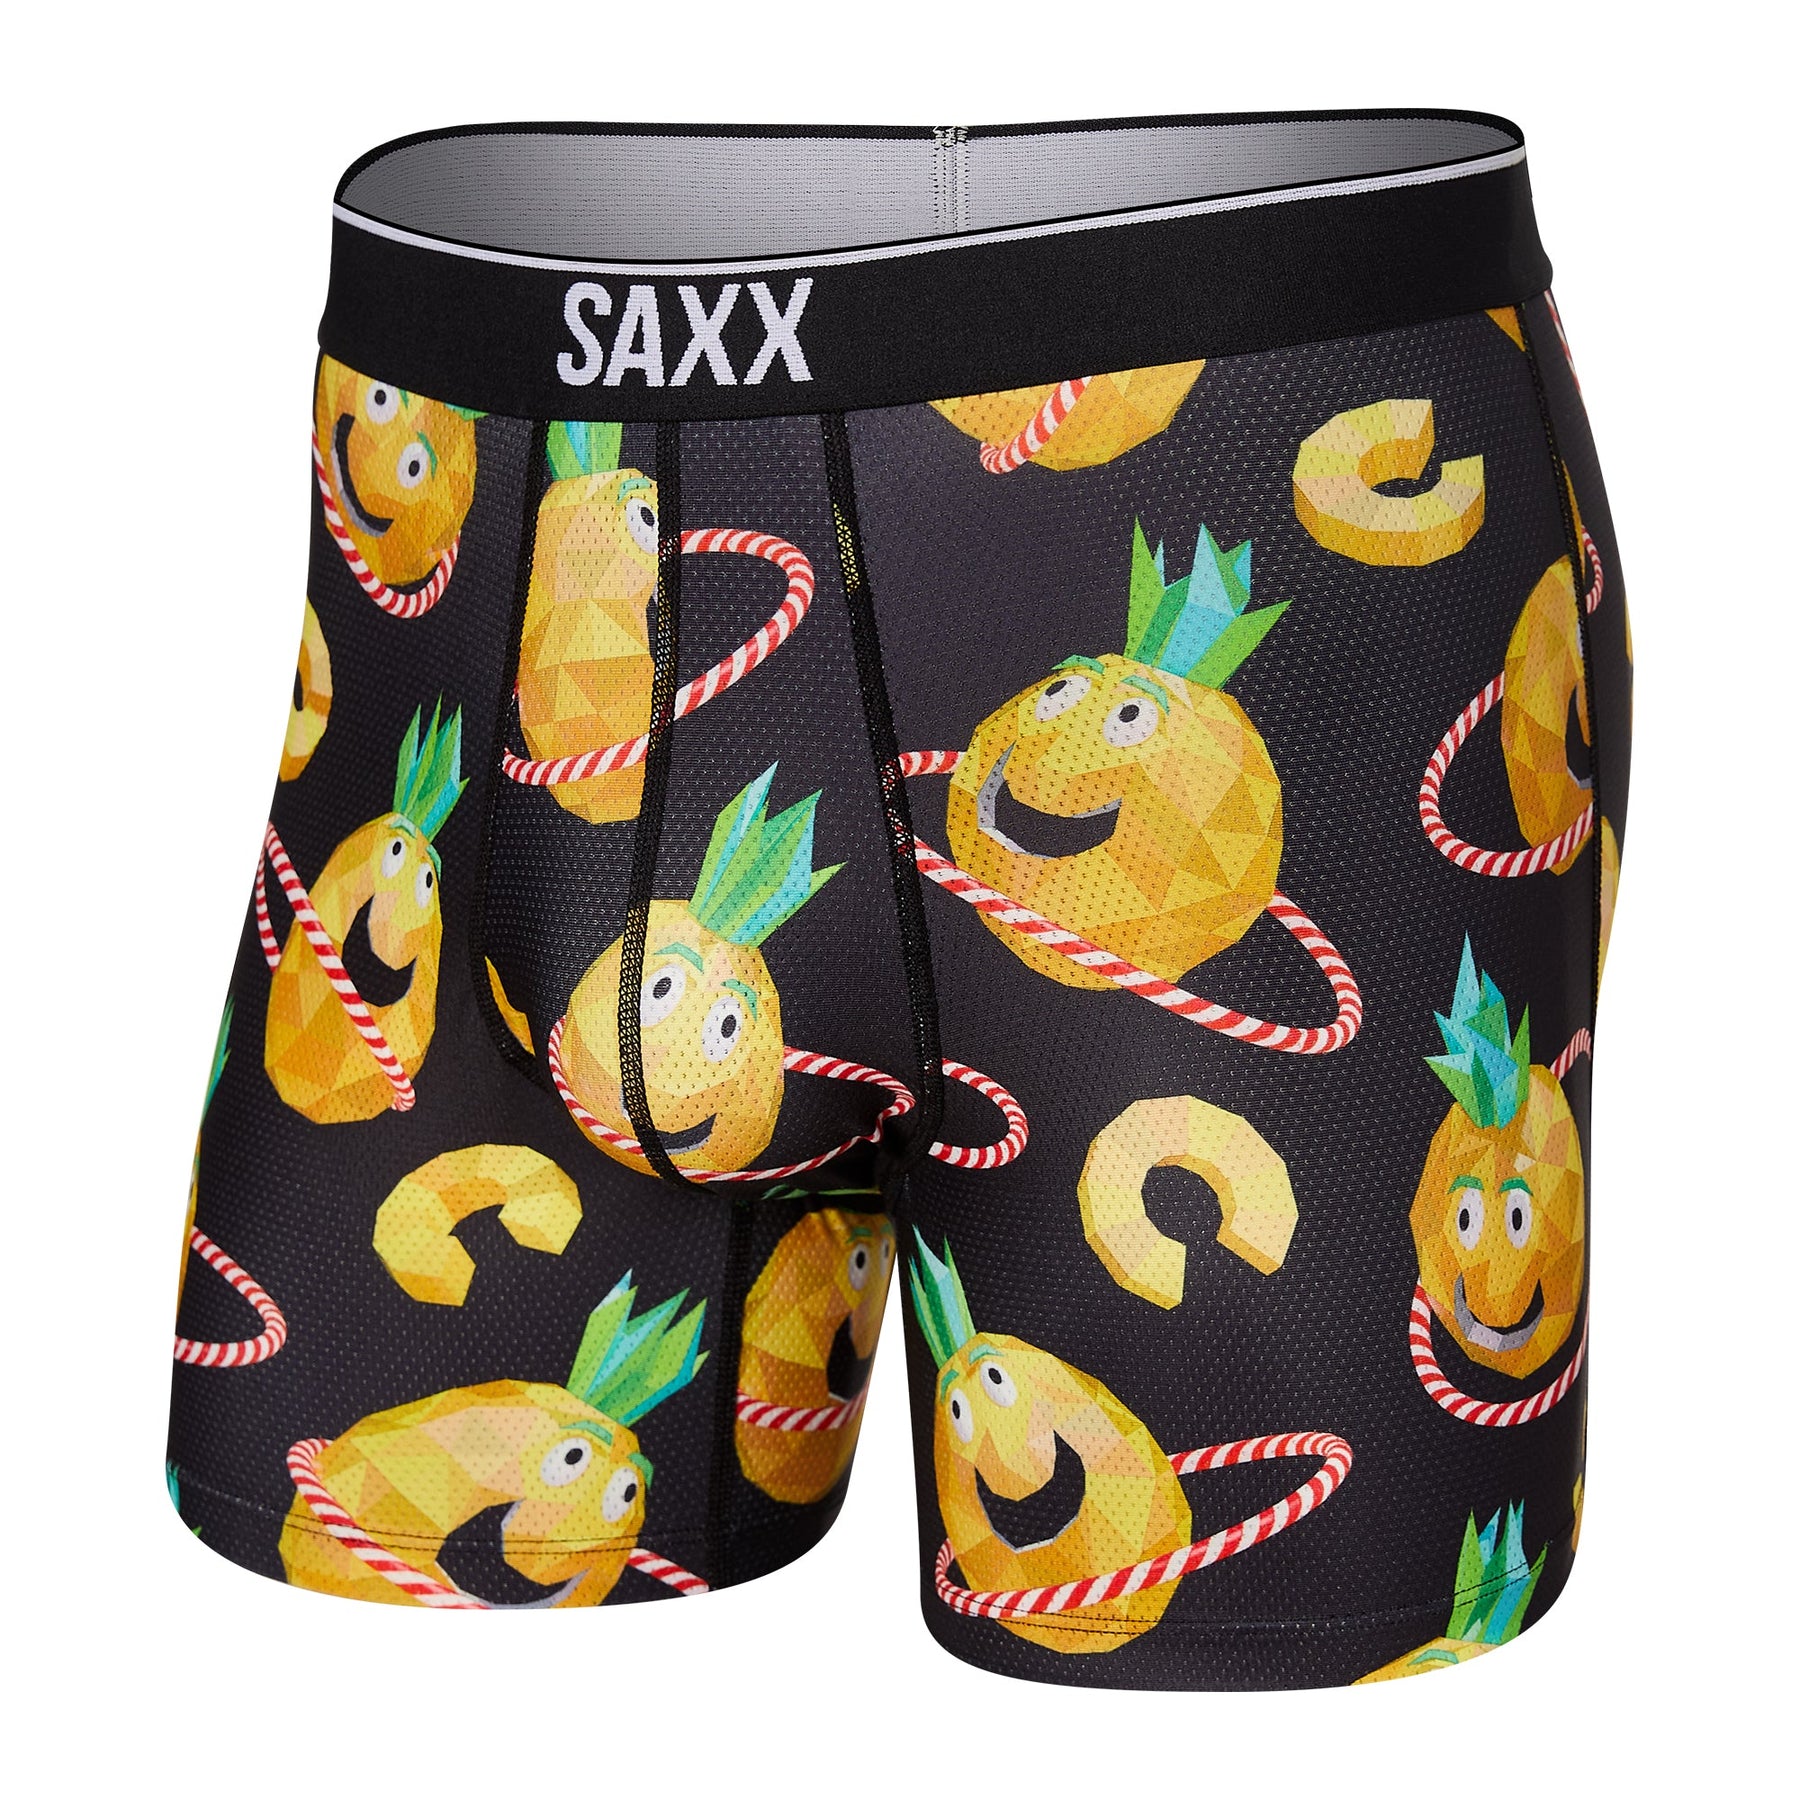 Sous-vêtement pour homme par Saxx | SXBB29 PHH | Boutique Vvög, vêtements mode pour hommes